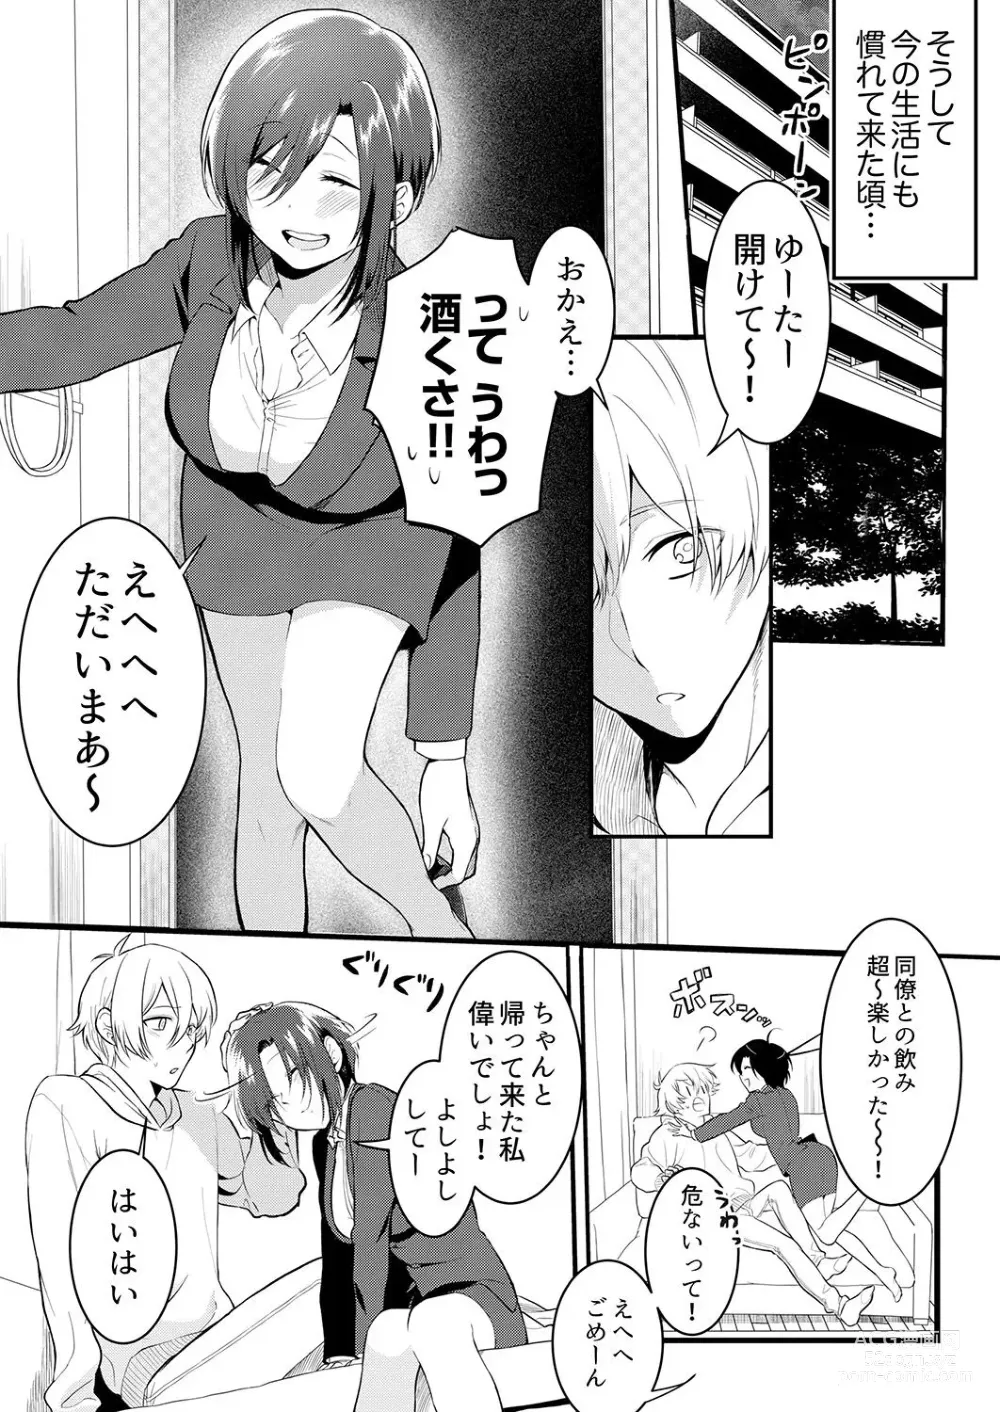 Page 7 of manga Hageshii SEX de Motokare o Wasuresasete ~ Yotta Furi shite Izanau Ane